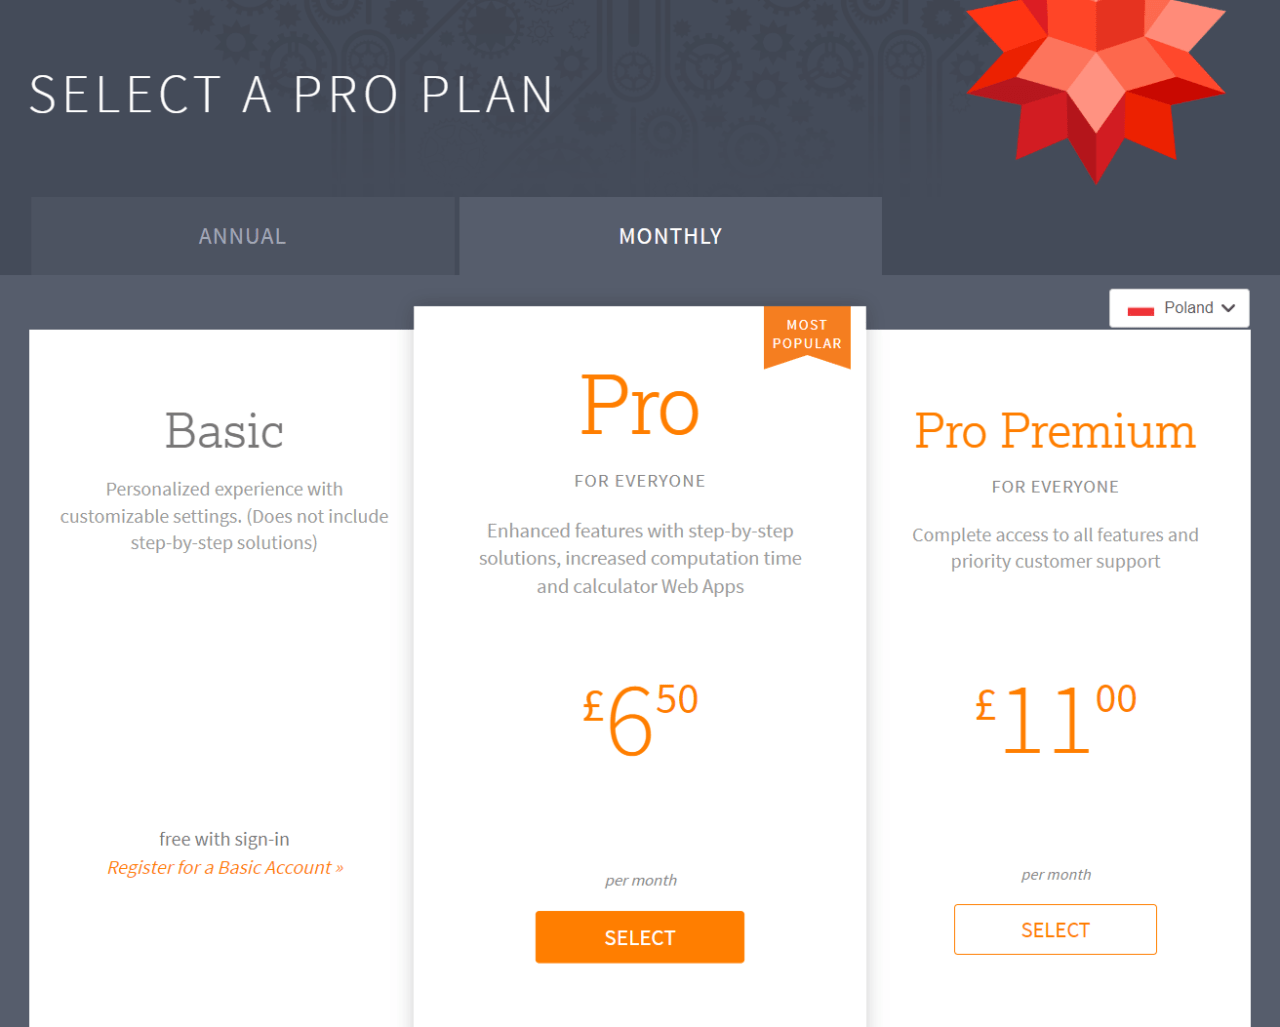 Ekran wyboru planów subskrypcji z trzema opcjami: Basic, Pro i Pro Premium. Plan Pro z ceną £6,50 miesięcznie jest wyróżniony jako "NAJBARDZIEJ POPULARNY".